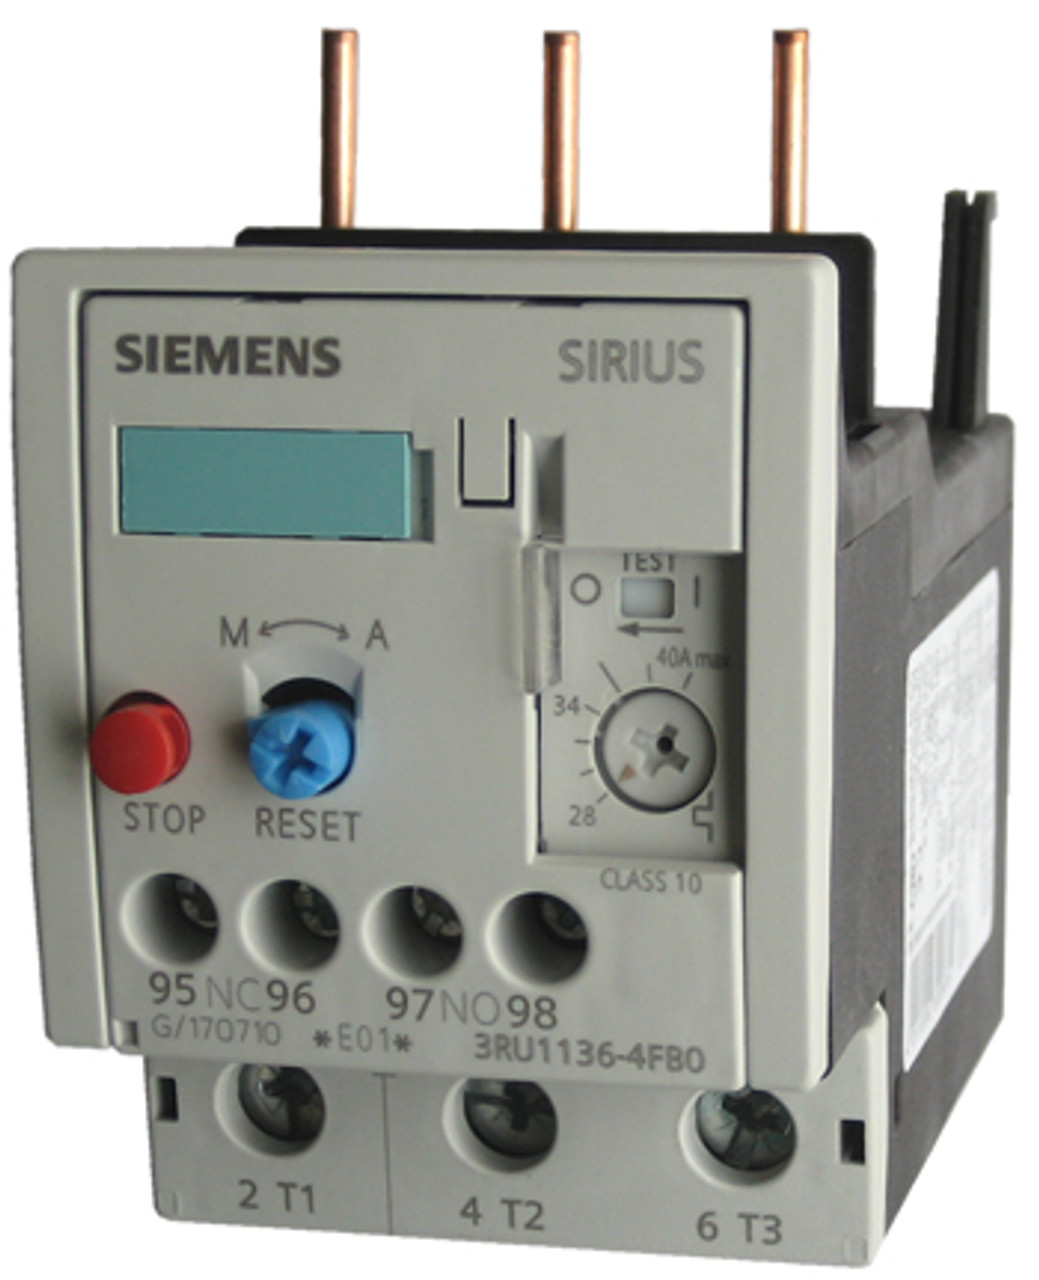 Siemens 3RU1136-4FB0 thermal overload relay